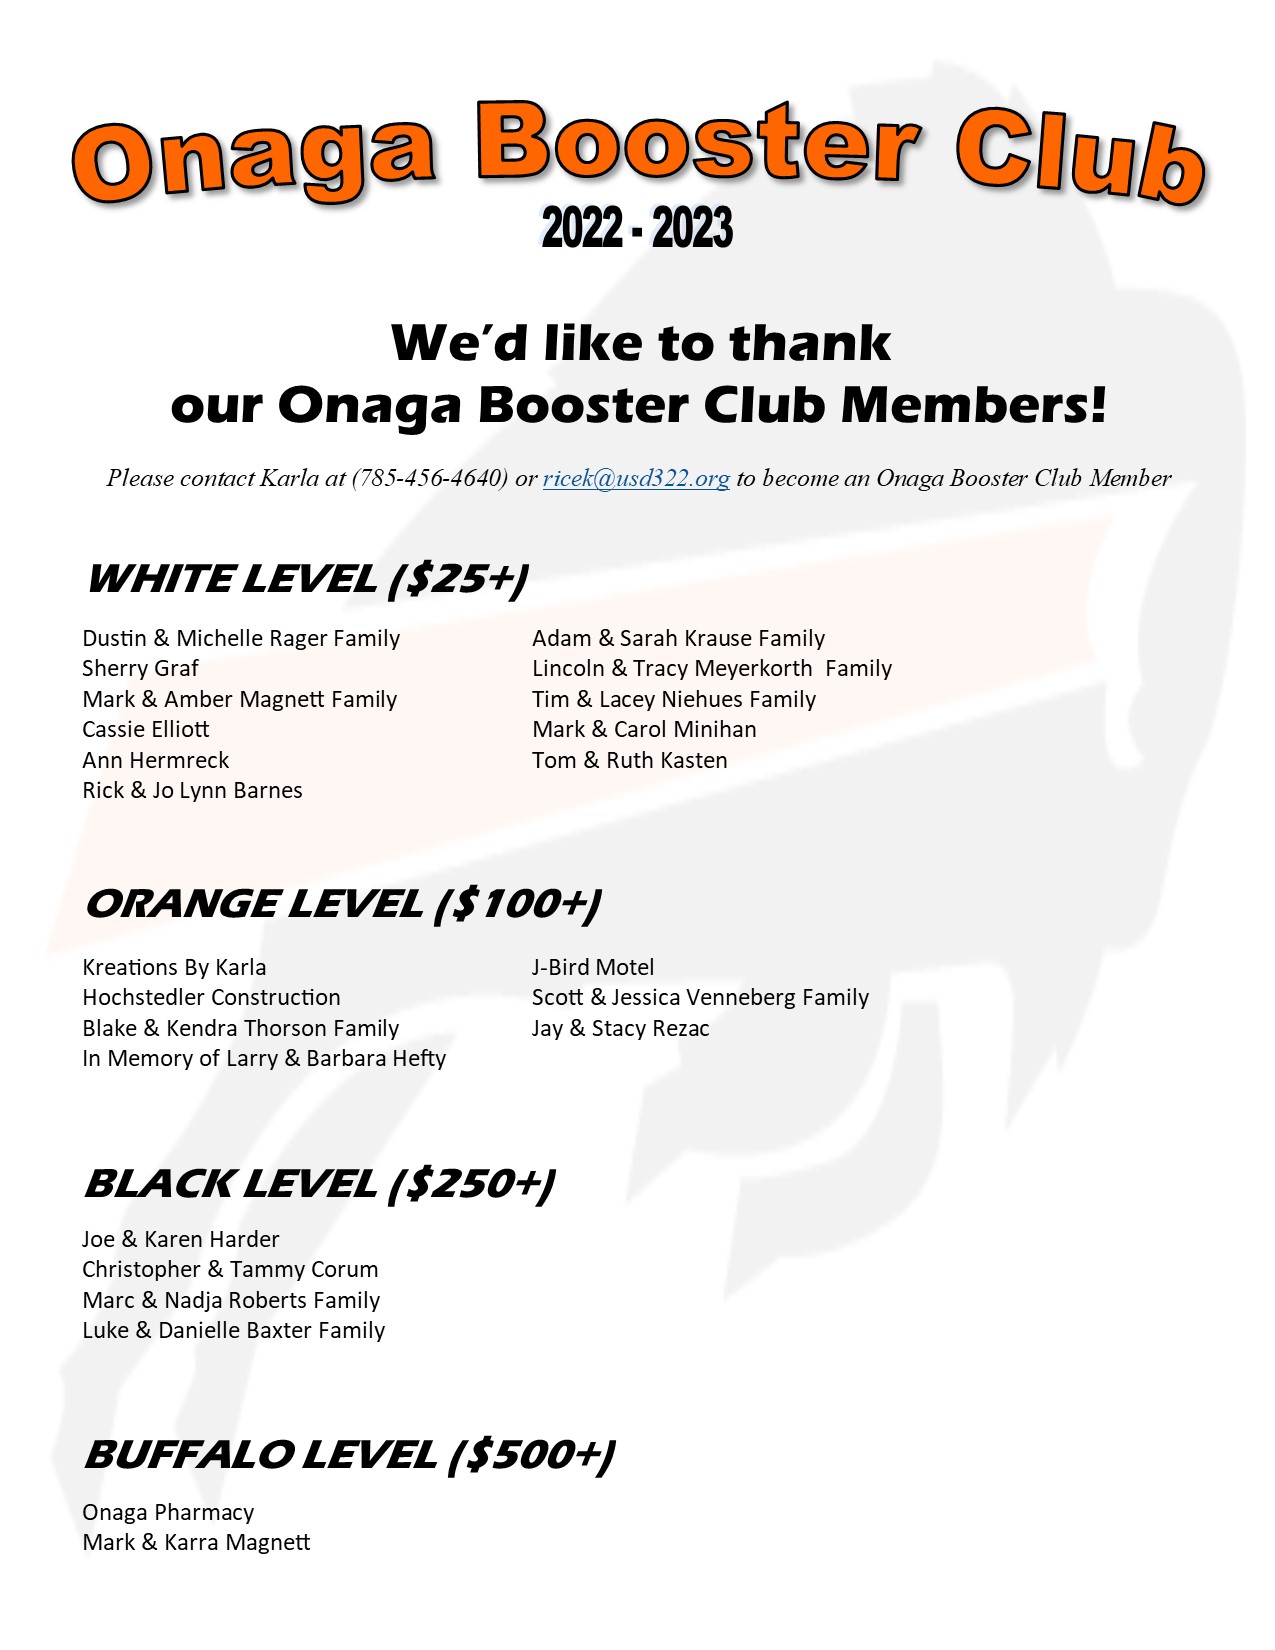 Onaga Booster Club List as of 9.8.22